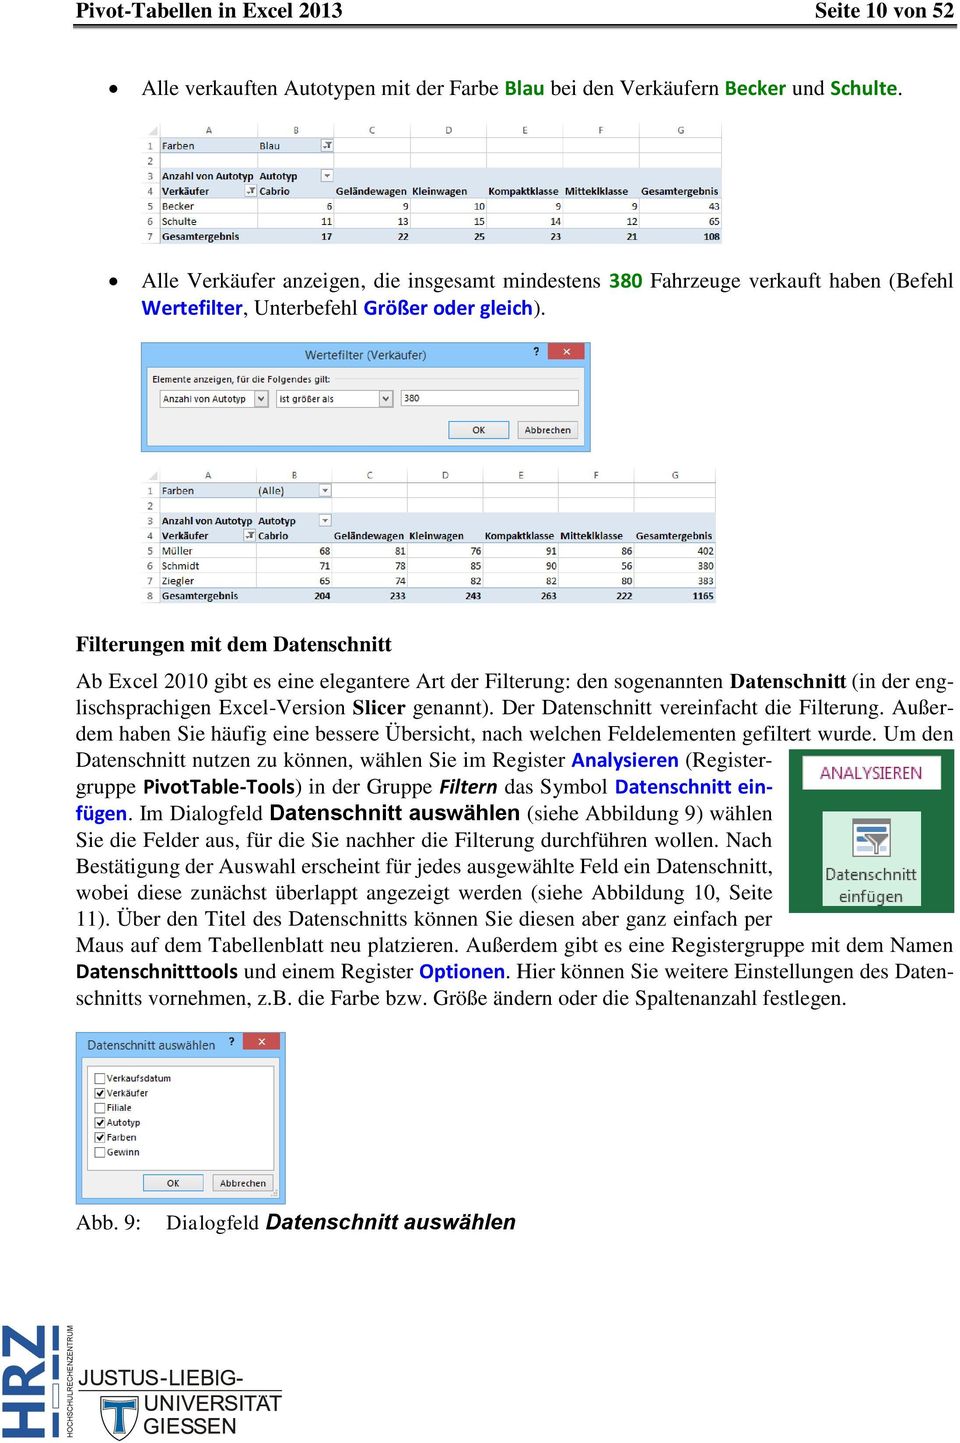 Filterungen mit dem Datenschnitt Ab Excel 2010 gibt es eine elegantere Art der Filterung: den sogenannten Datenschnitt (in der englischsprachigen Excel-Version Slicer genannt).